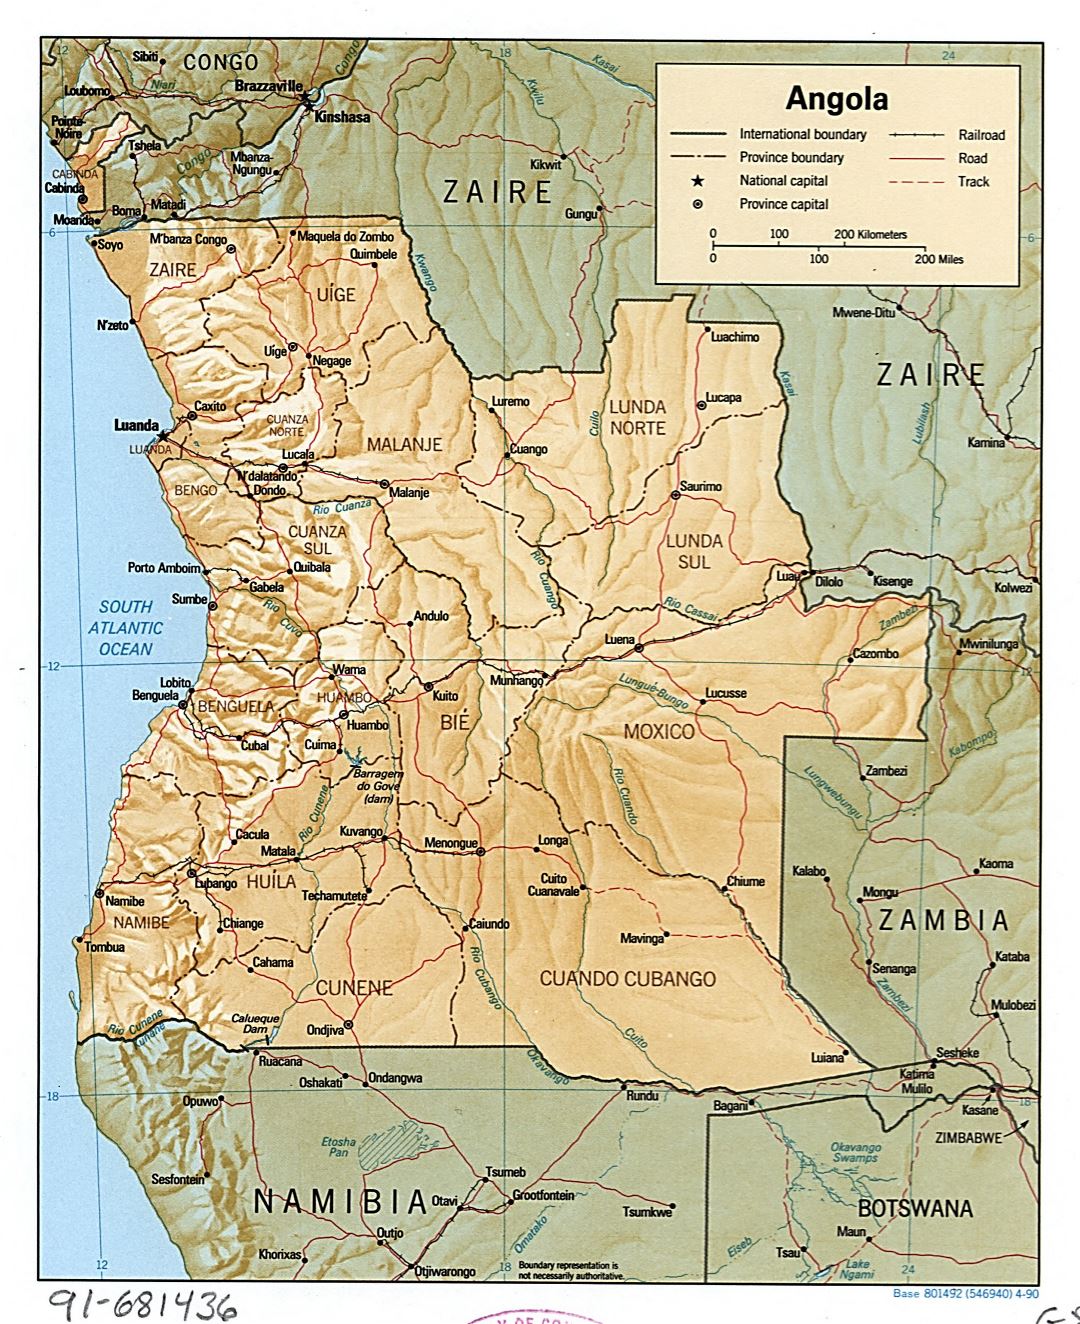 Большая подробная политическая и административная карта Анголы с рельефом, дорогами, железными дорогами и крупнымигородами - 1990